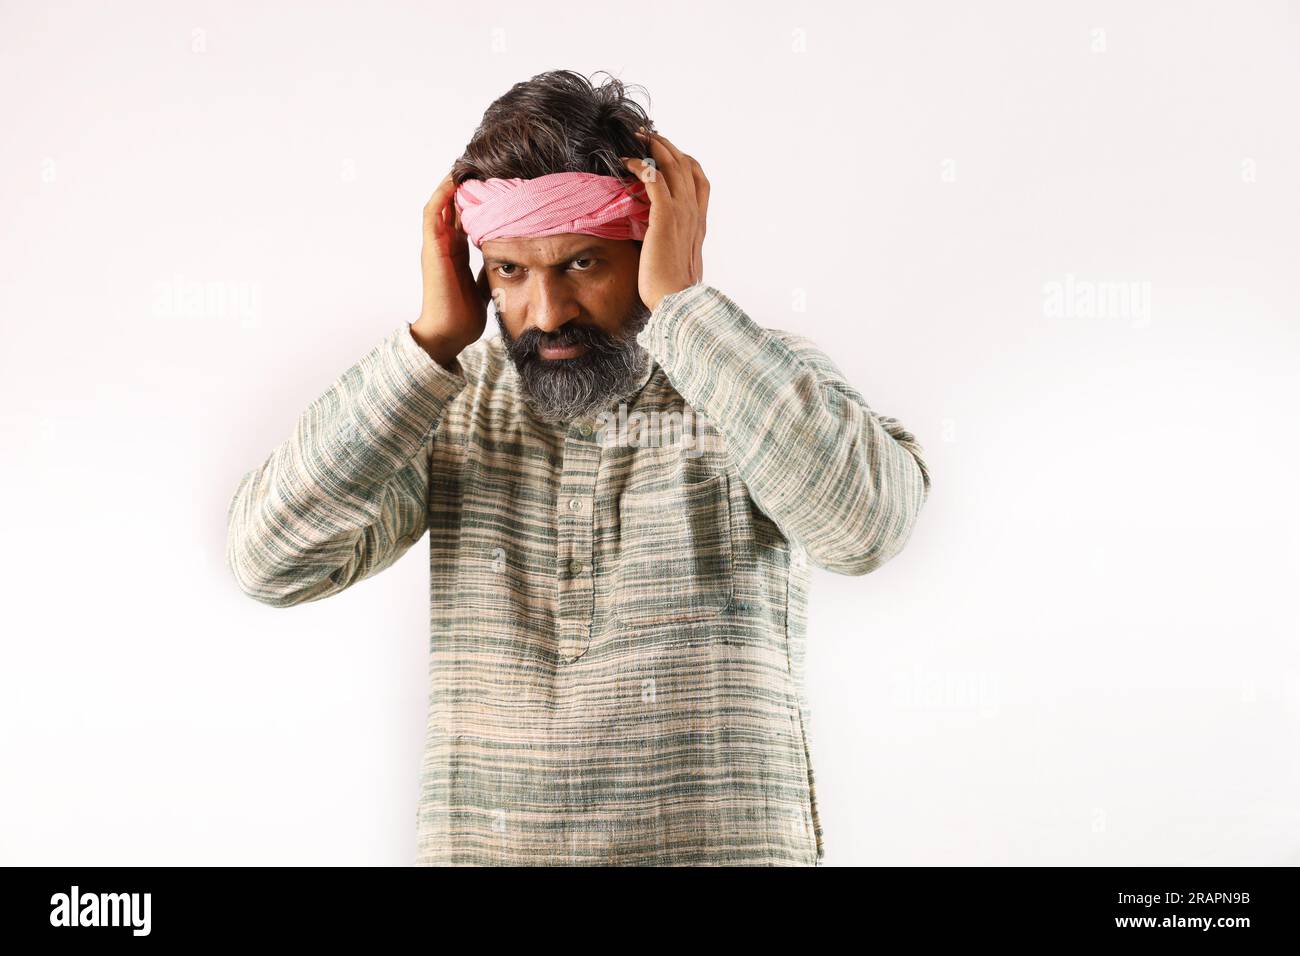 Ritratto di un uomo barbuto indiano nel concetto rurale dell'India. Espressioni funky sfondo bianco. povero abitante del villaggio. varie espressioni e stati d'animo di povertà Foto Stock